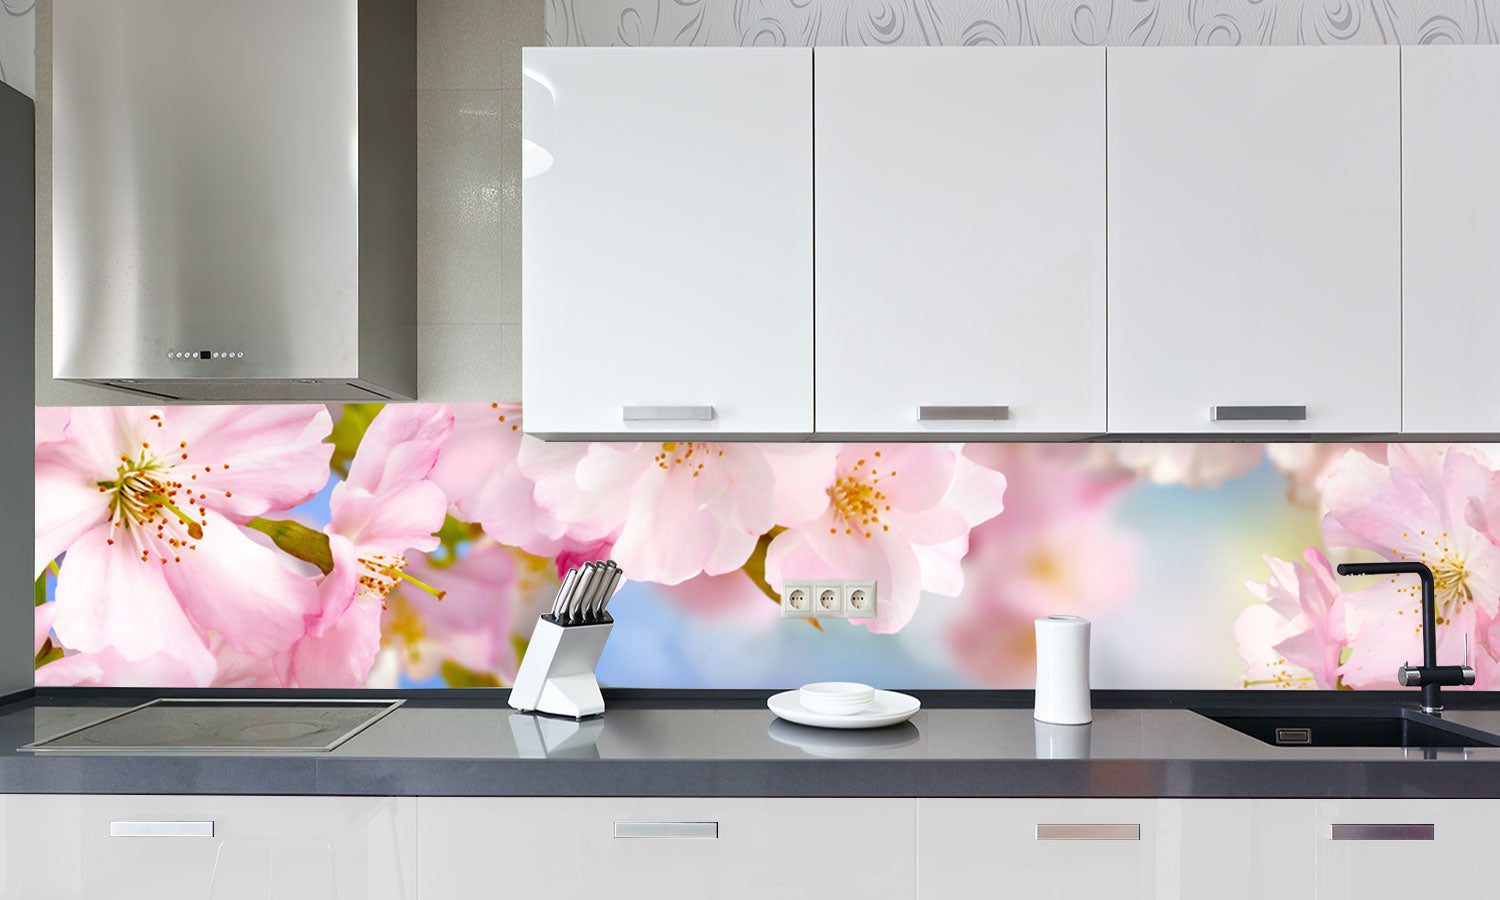 Kuhinjski paneli Cherry blossoms - Stekleni / PVC plošče / Pleksi steklo - s tiskom za kuhinjo, Stenske obloge PKU0294 - Life-decor.si